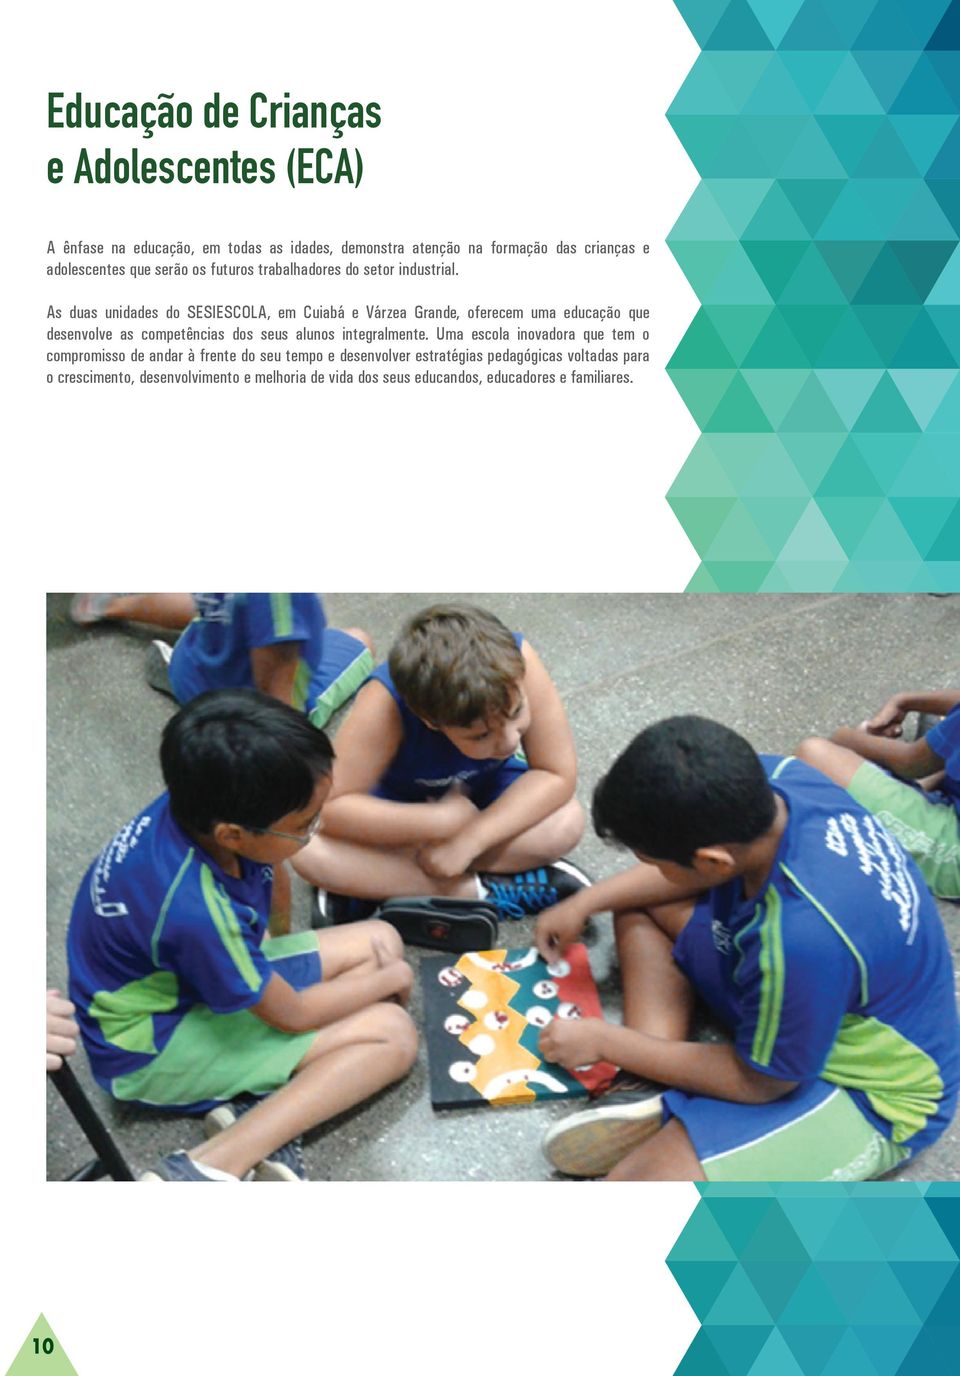 As duas unidades do SESIESCOLA, em Cuiabá e Várzea Grande, oferecem uma educação que desenvolve as competências dos seus alunos